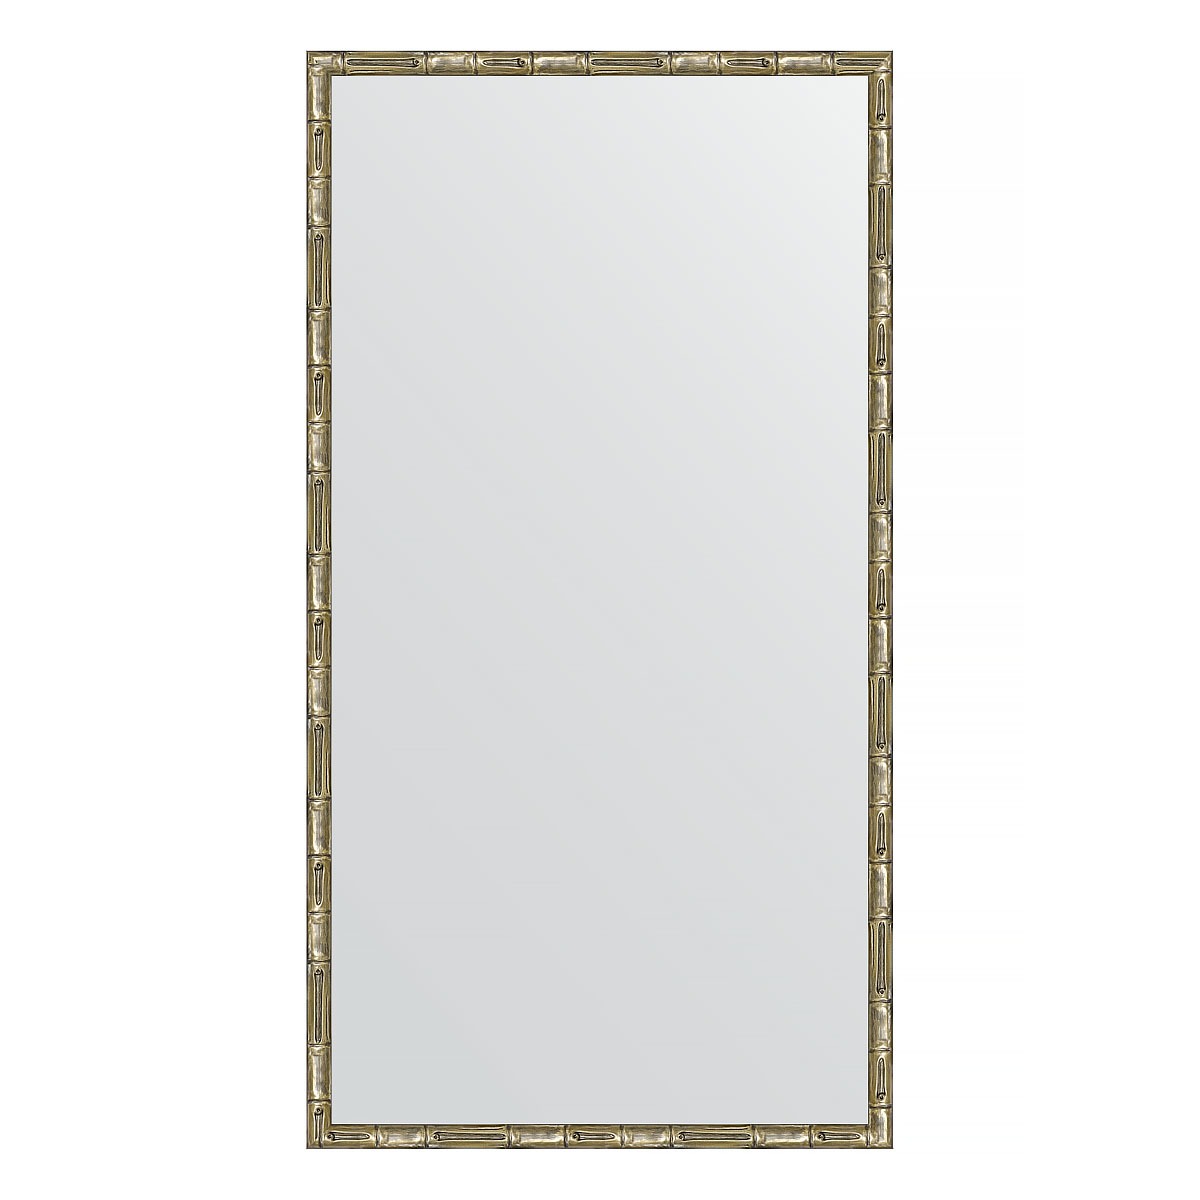 Зеркало в багетной раме Evoform серебряный бамбук 24 мм 57х107 см зеркало элегант 60 110 см в раме из зеркальной мозаики для ванной